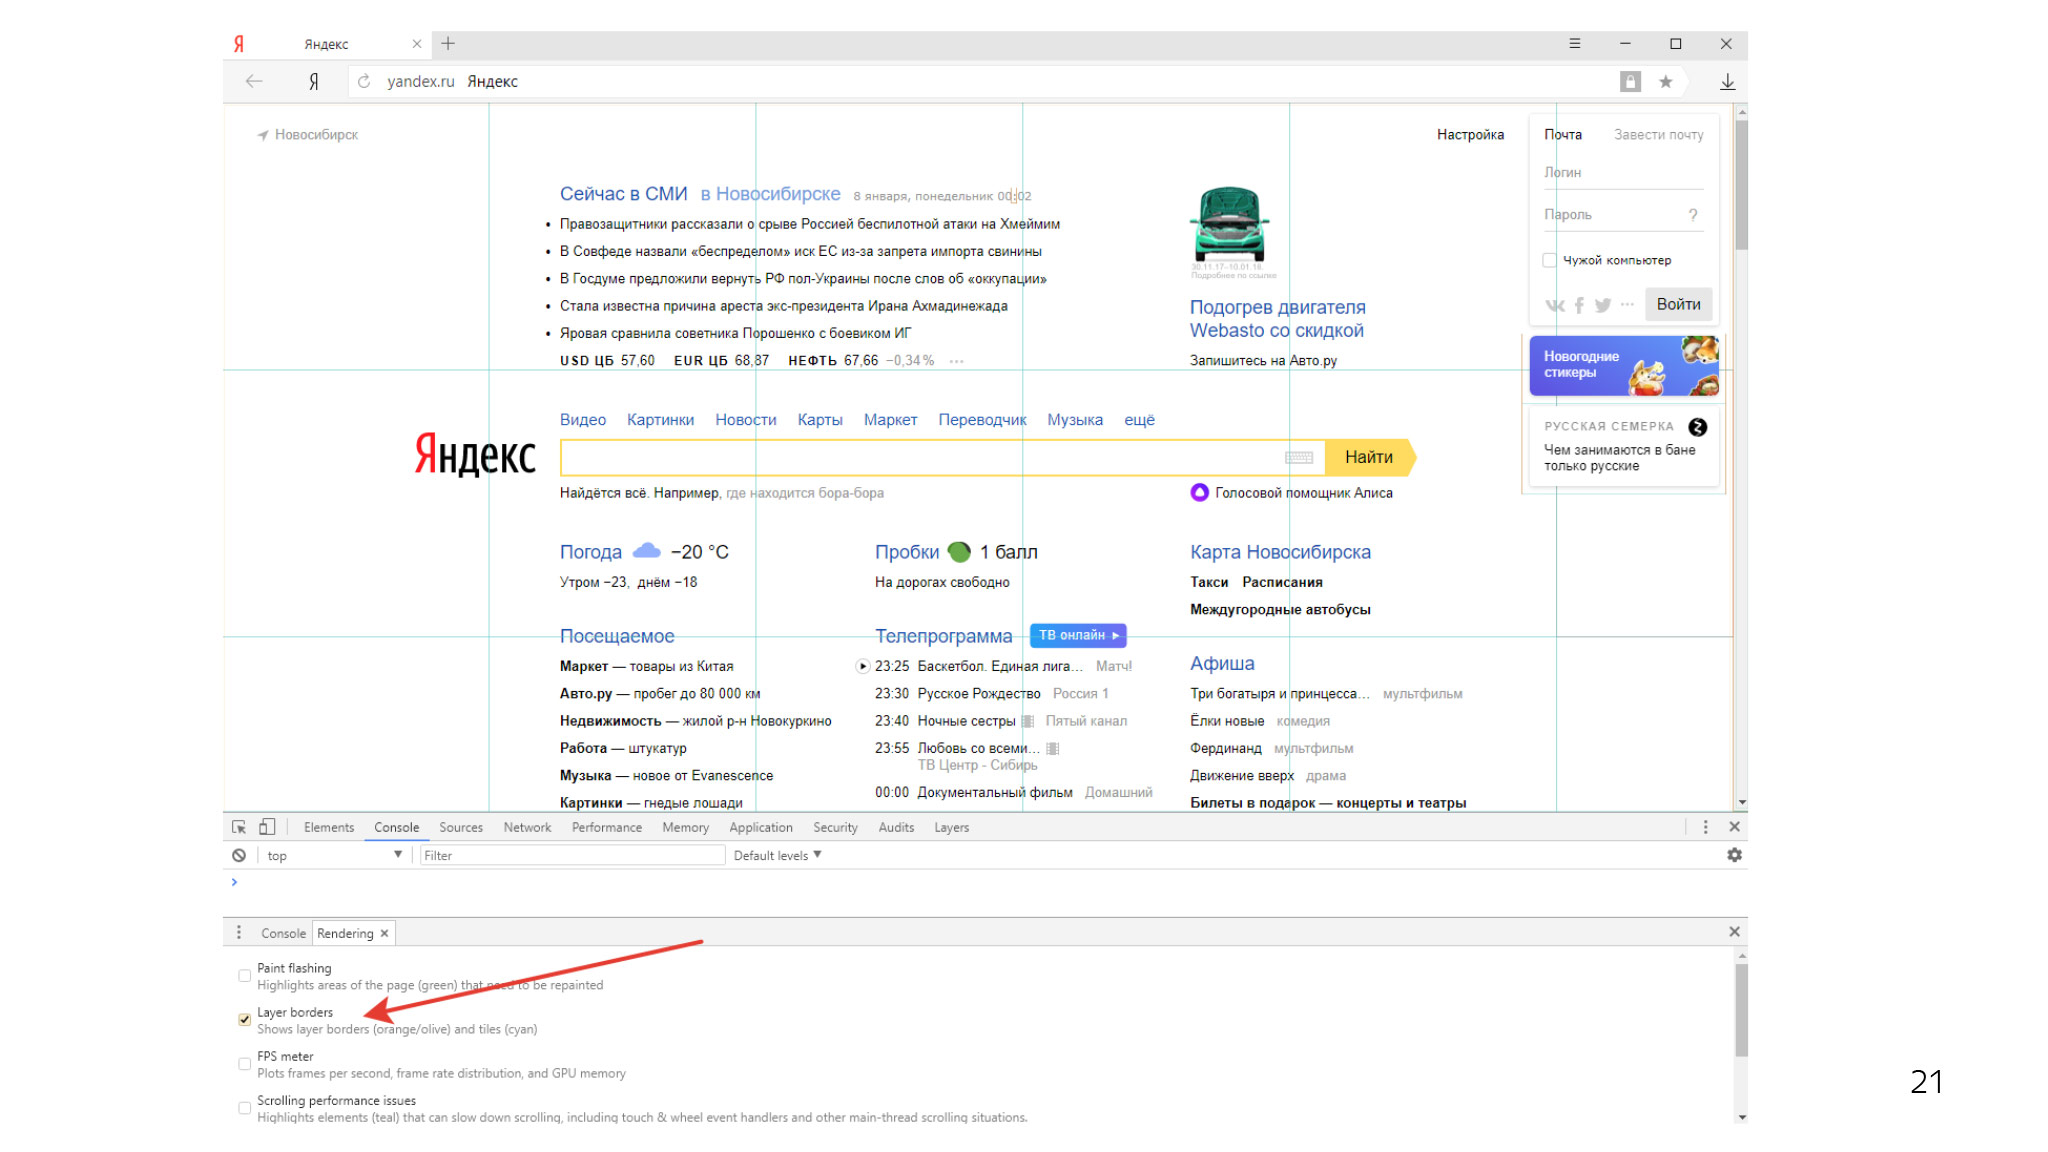 Как сэкономить ресурсы в браузере и не сломать веб. Доклад Яндекса - 8